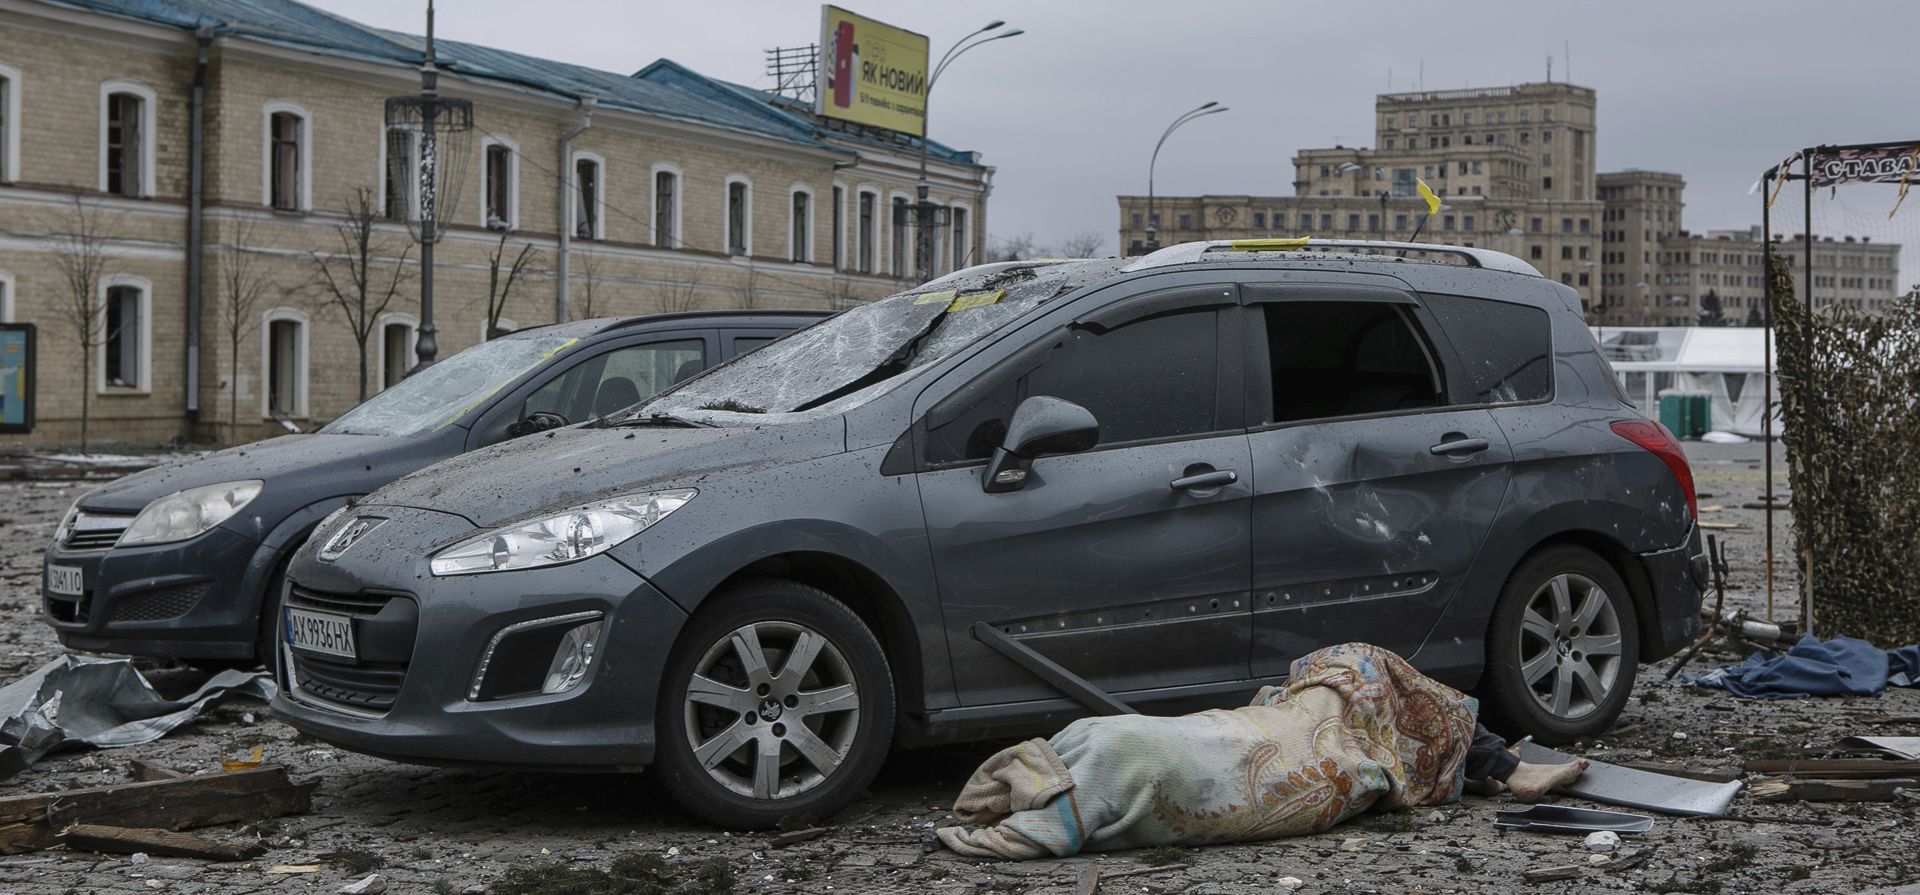 El cuerpo de una víctima yace junto a autos dañados en la plaza central luego del bombardeo del edificio del Ayuntamiento en Kharkiv, Ucrania, el martes 1 de marzo de 2022. Rusia intensificó el martes los bombardeos de Kharkiv, la segunda ciudad más grande de Ucrania, golpeando a civiles objetivos allí. 